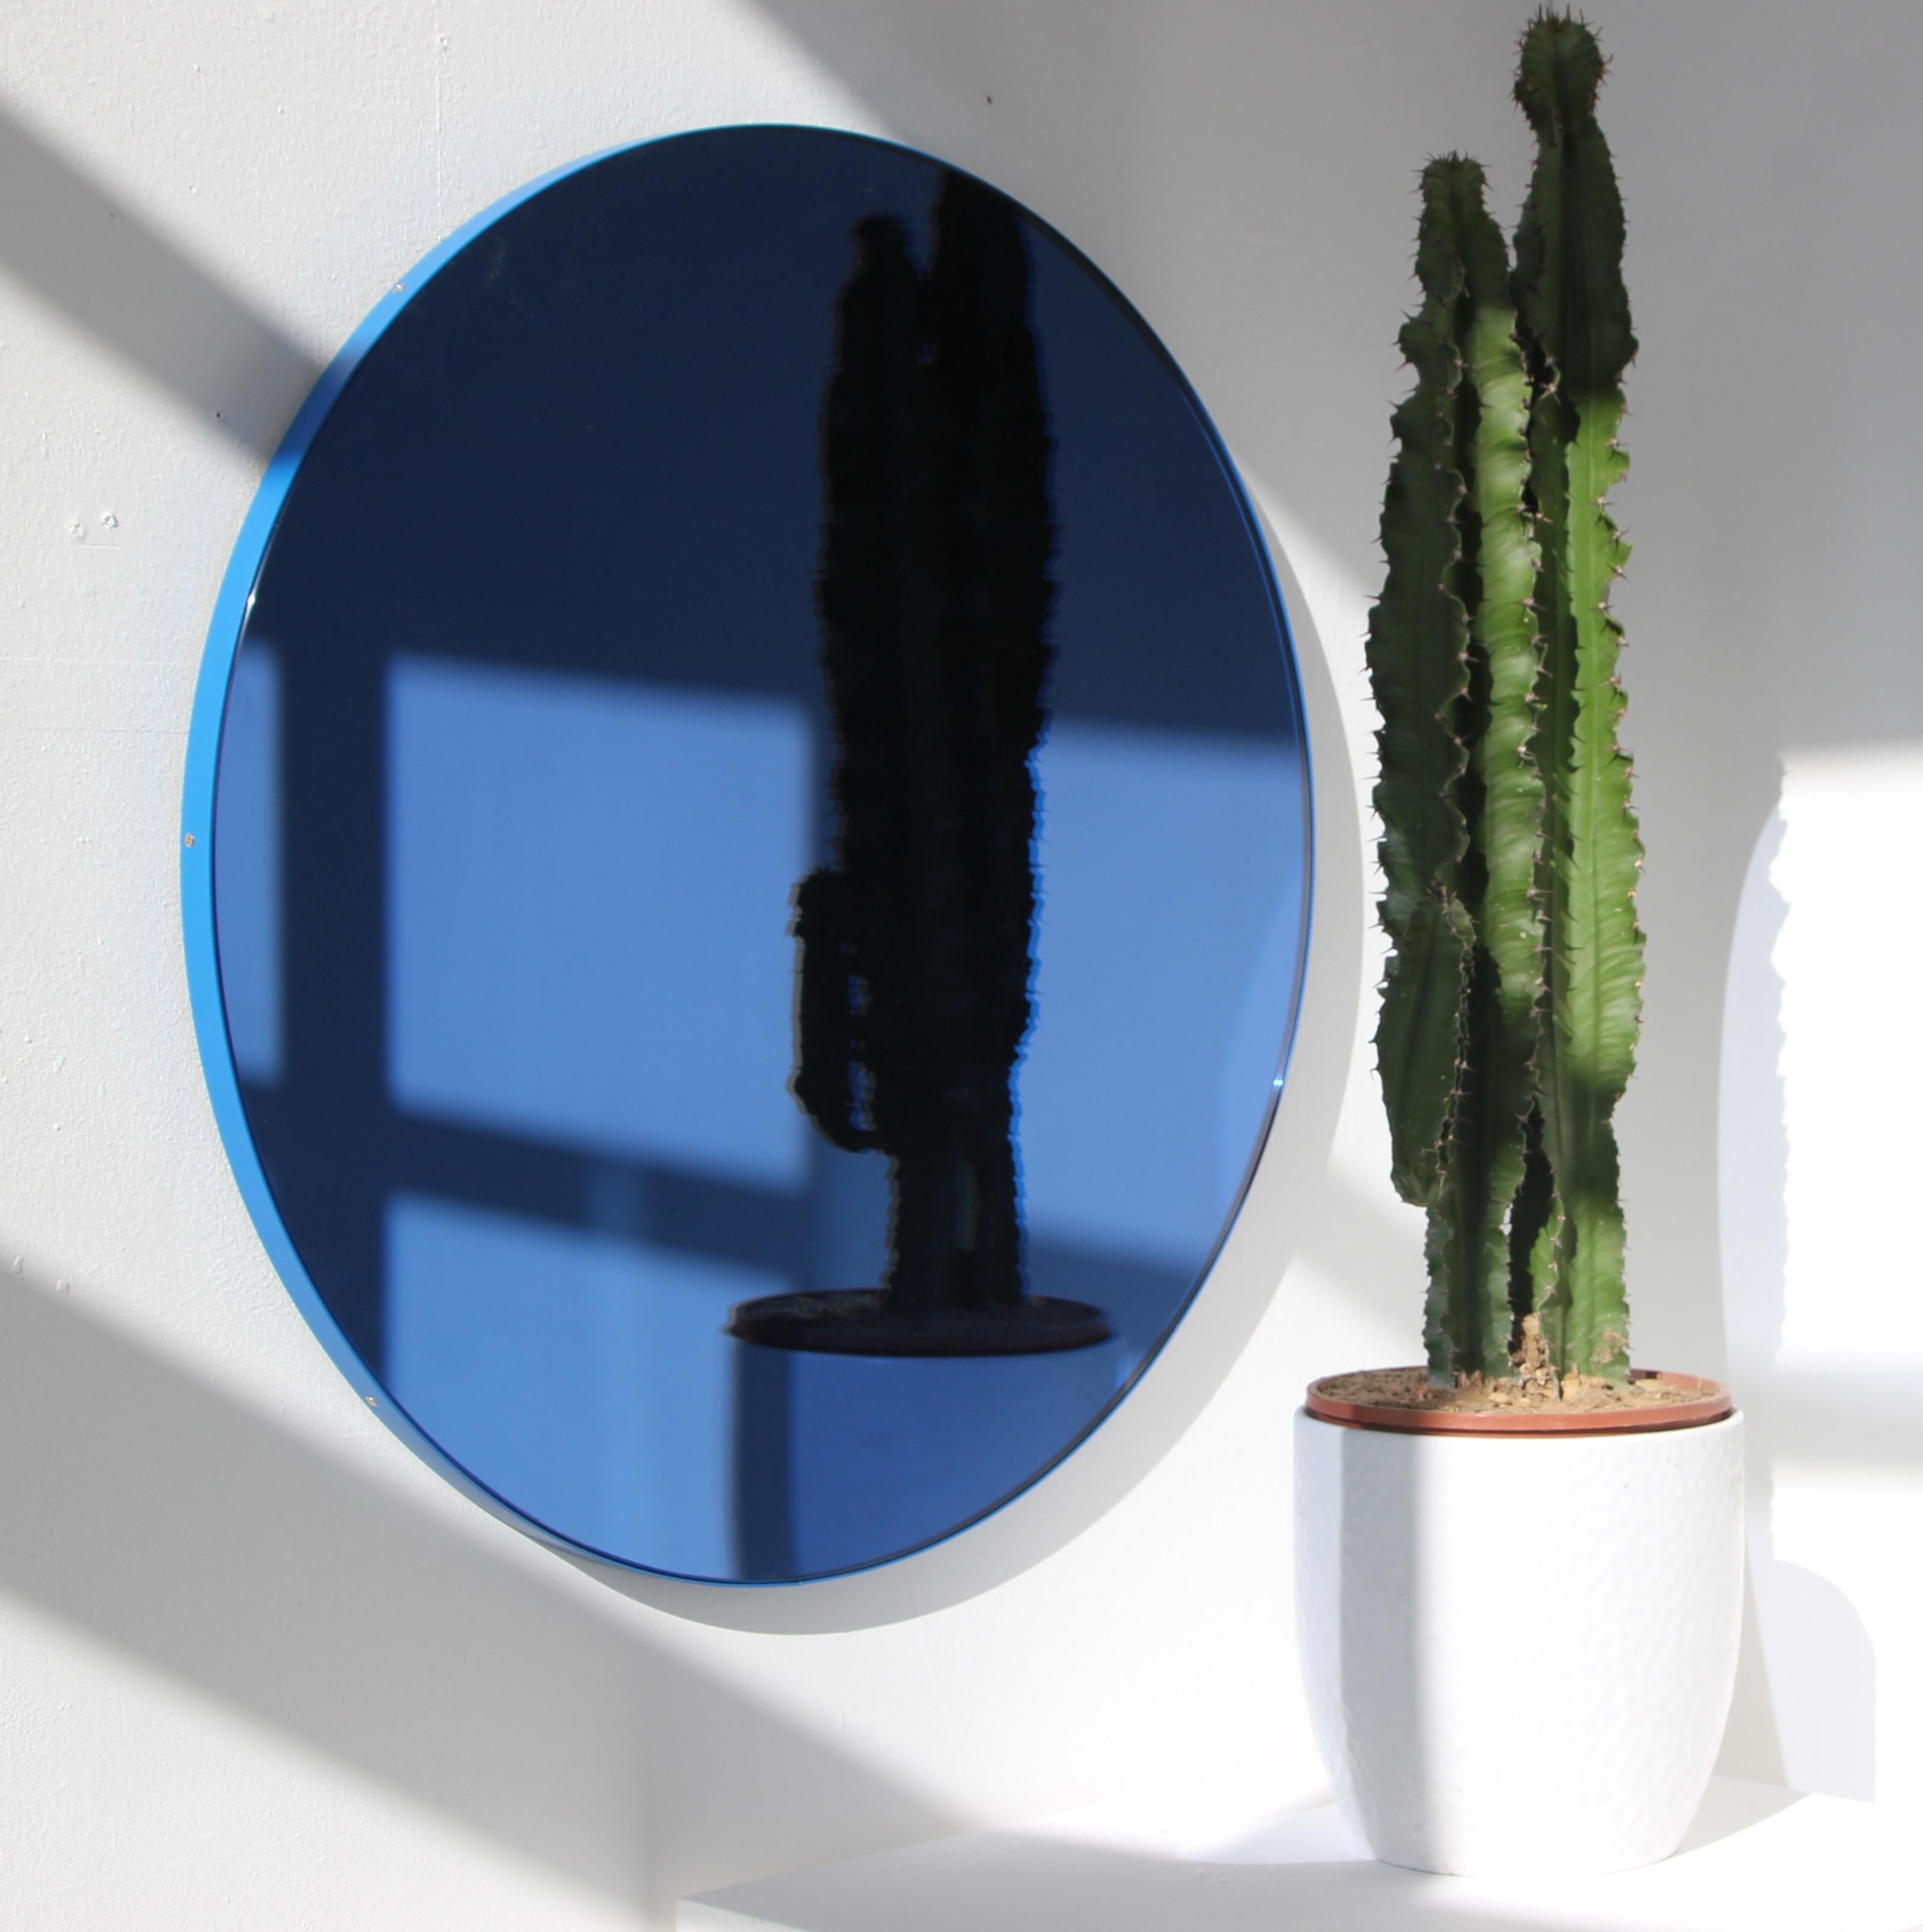 Zeitgenössischer, blau getönter, runder Spiegel mit einem blauen, pulverbeschichteten Aluminiumrahmen. Entworfen und handgefertigt in London, UK.

Die mittelgroßen, großen und extragroßen Spiegel (60, 80 und 100 cm) sind mit einem ausgeklügelten